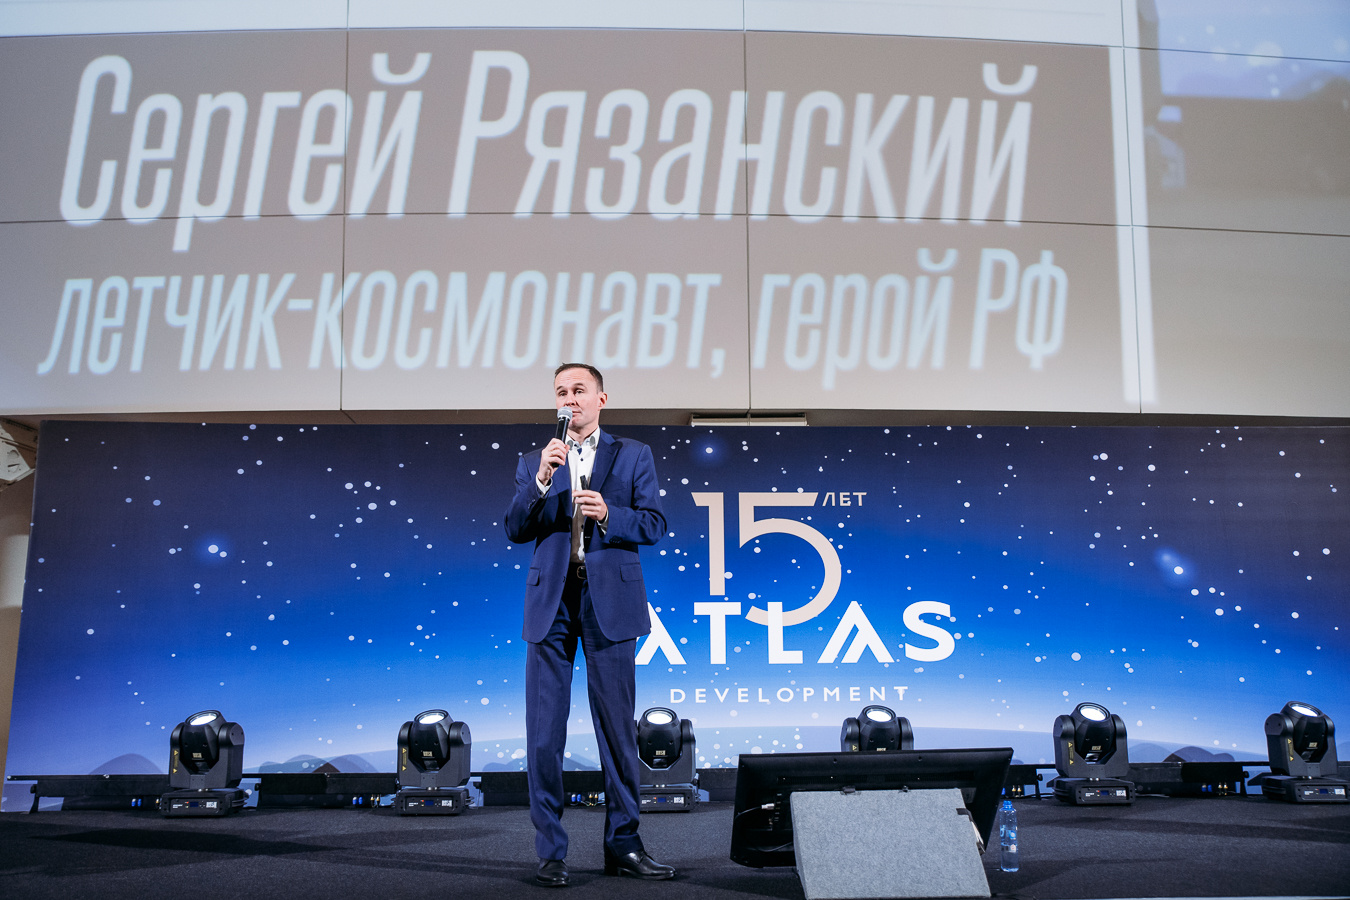 Сергей Рязанский совершил четыре выхода в открытый космос, а сейчас он вдохновляет и мотивирует уральских студентов